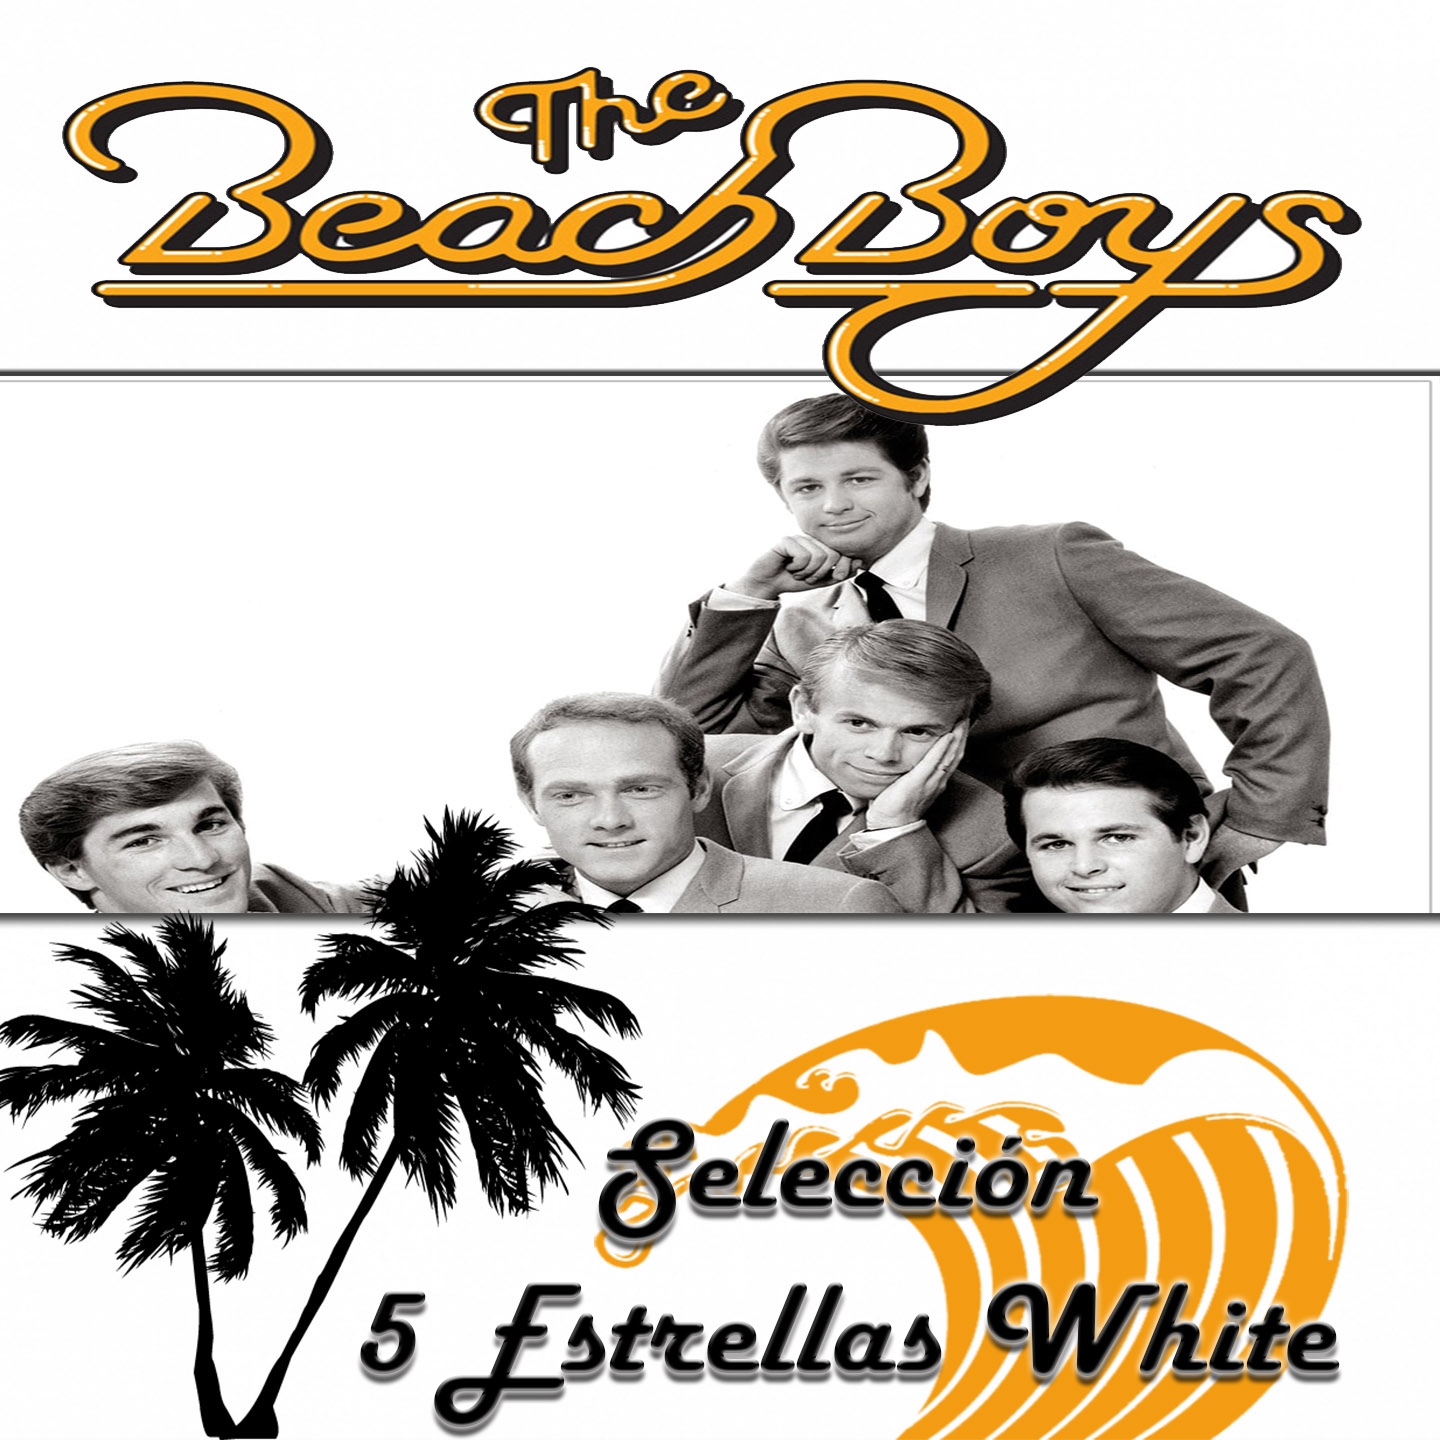 The Beach Boys, Selección 5 Estrellas White